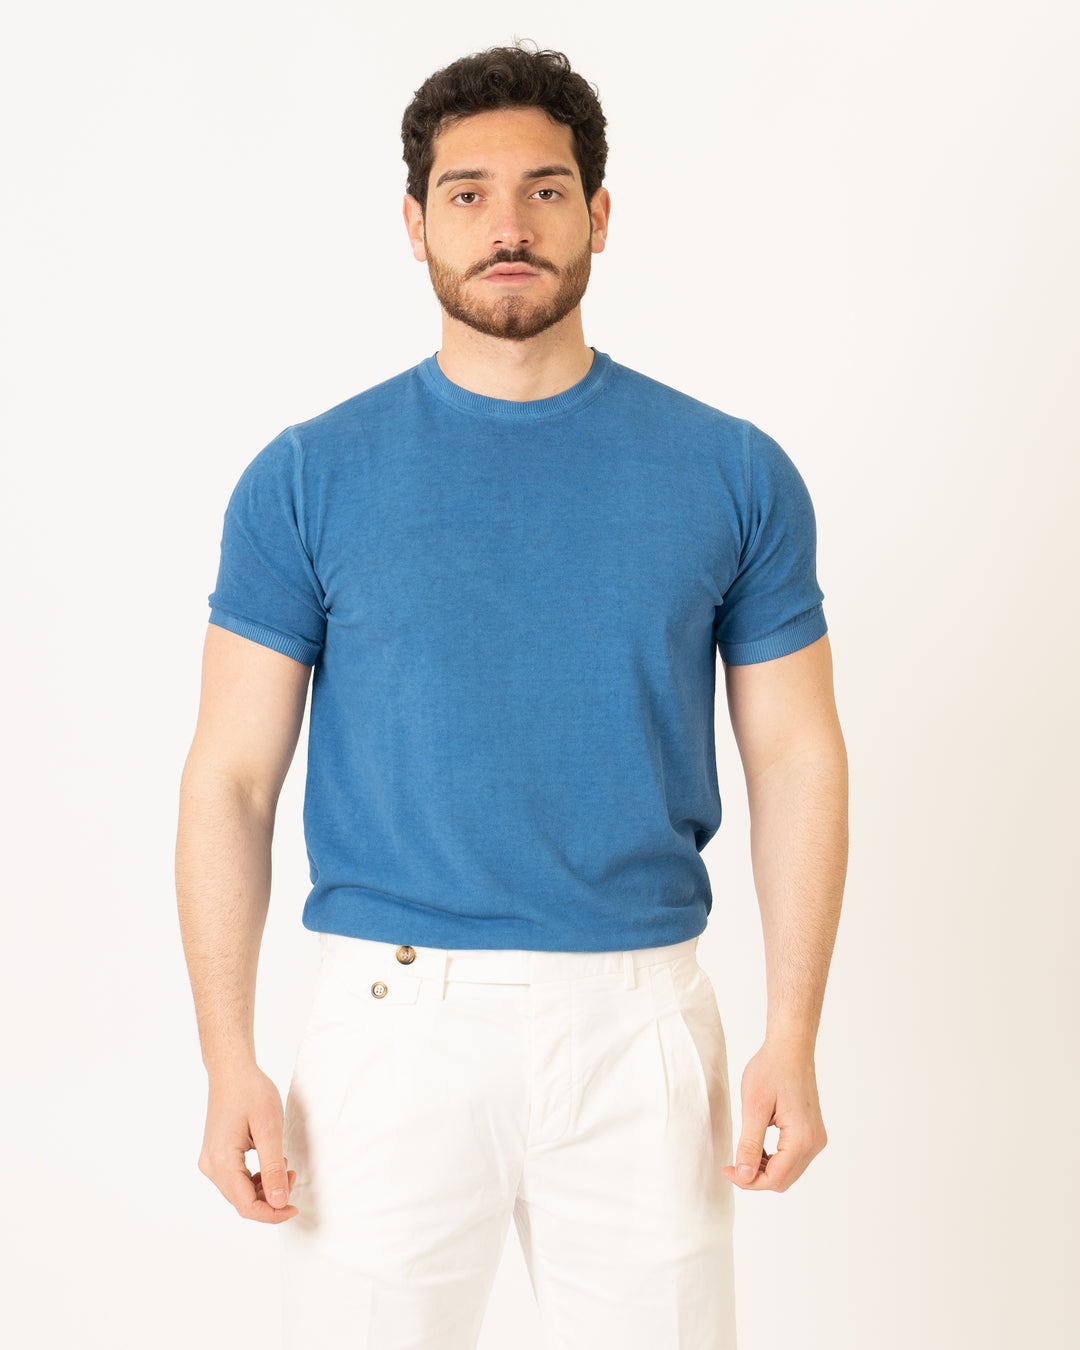 T-Shirt Maglia Bluette